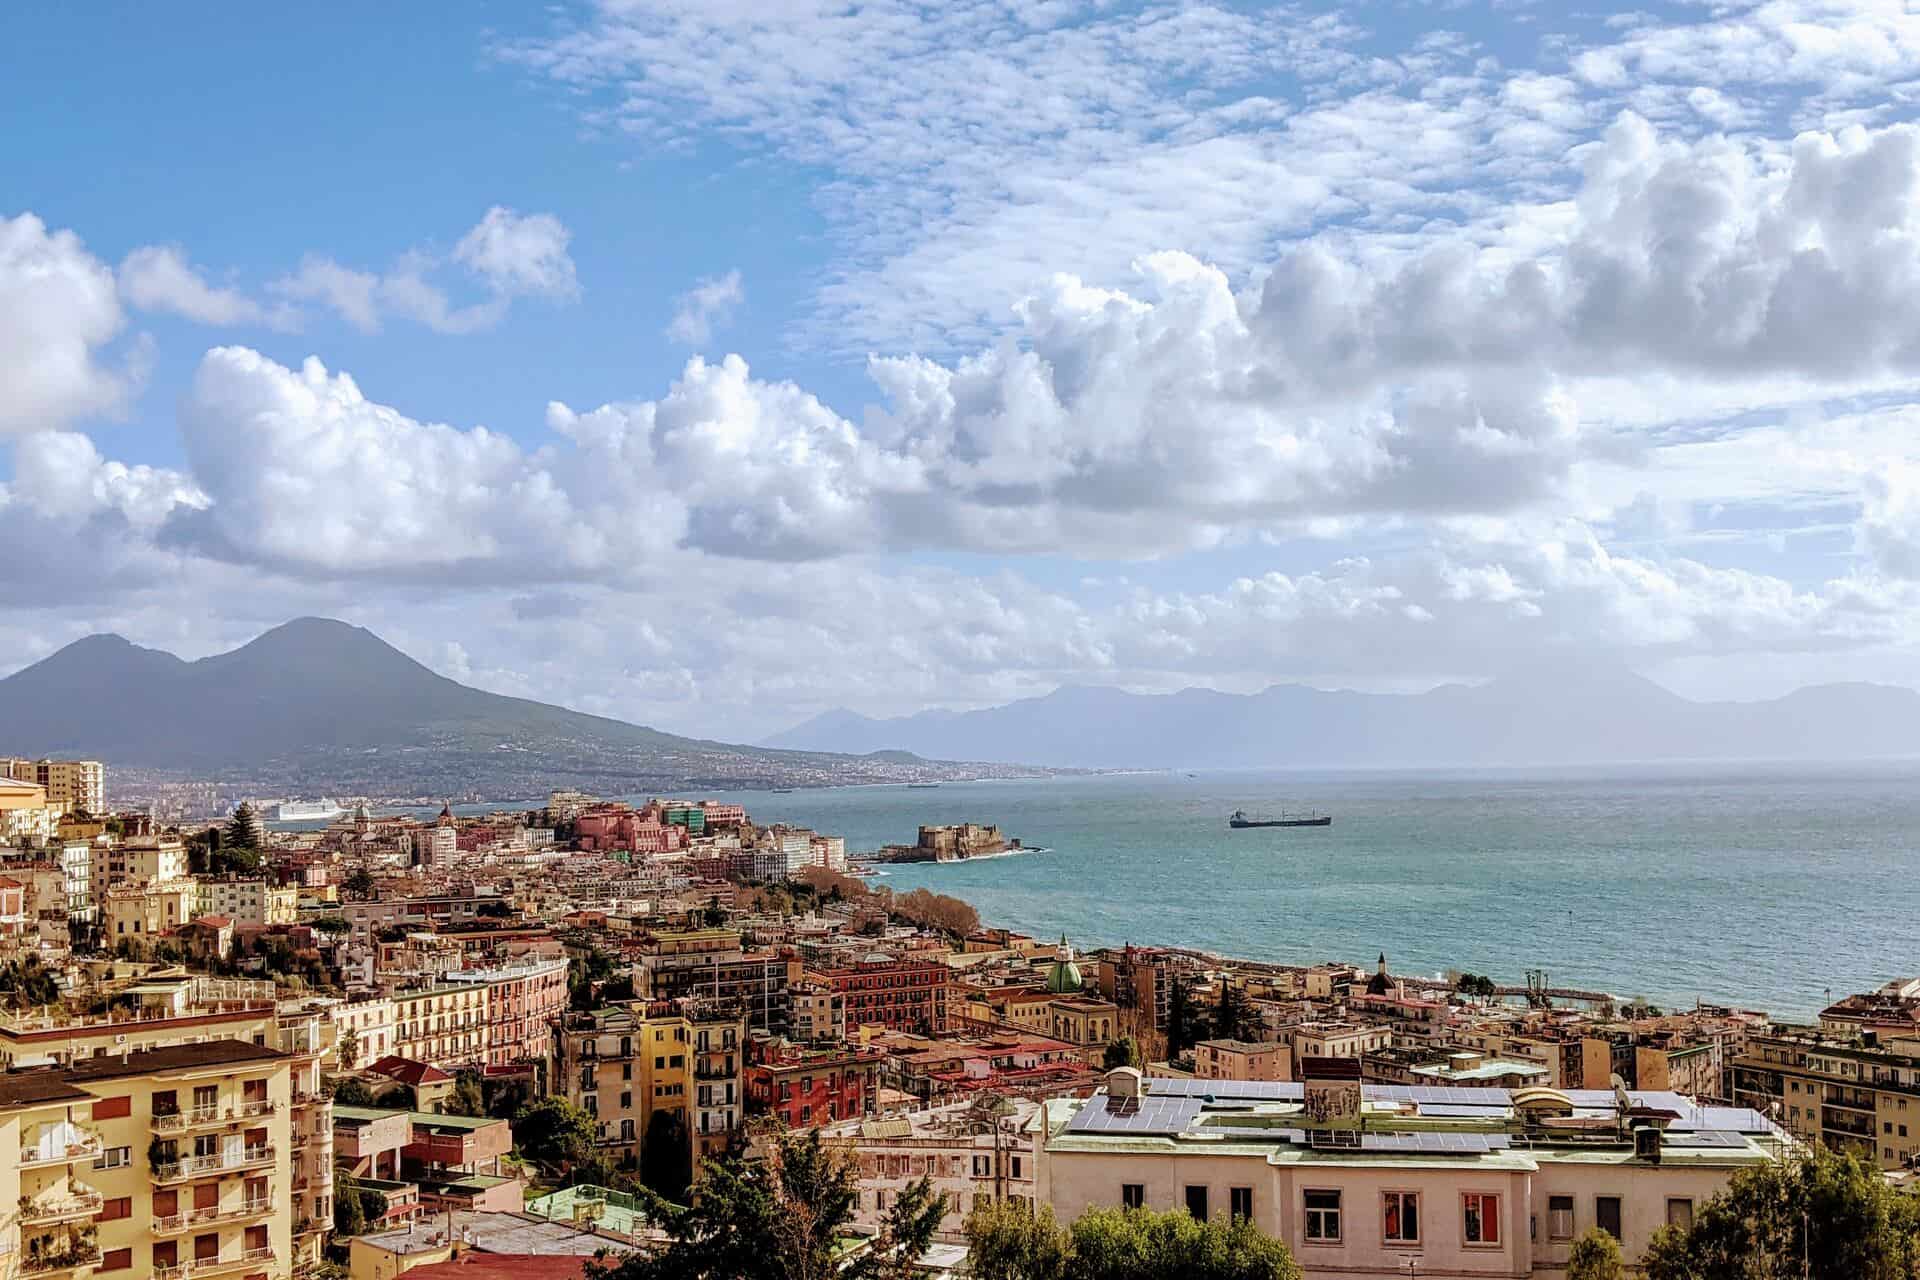 Avgust: V Neapelj iz Benetk za 36€ (letalska karta)